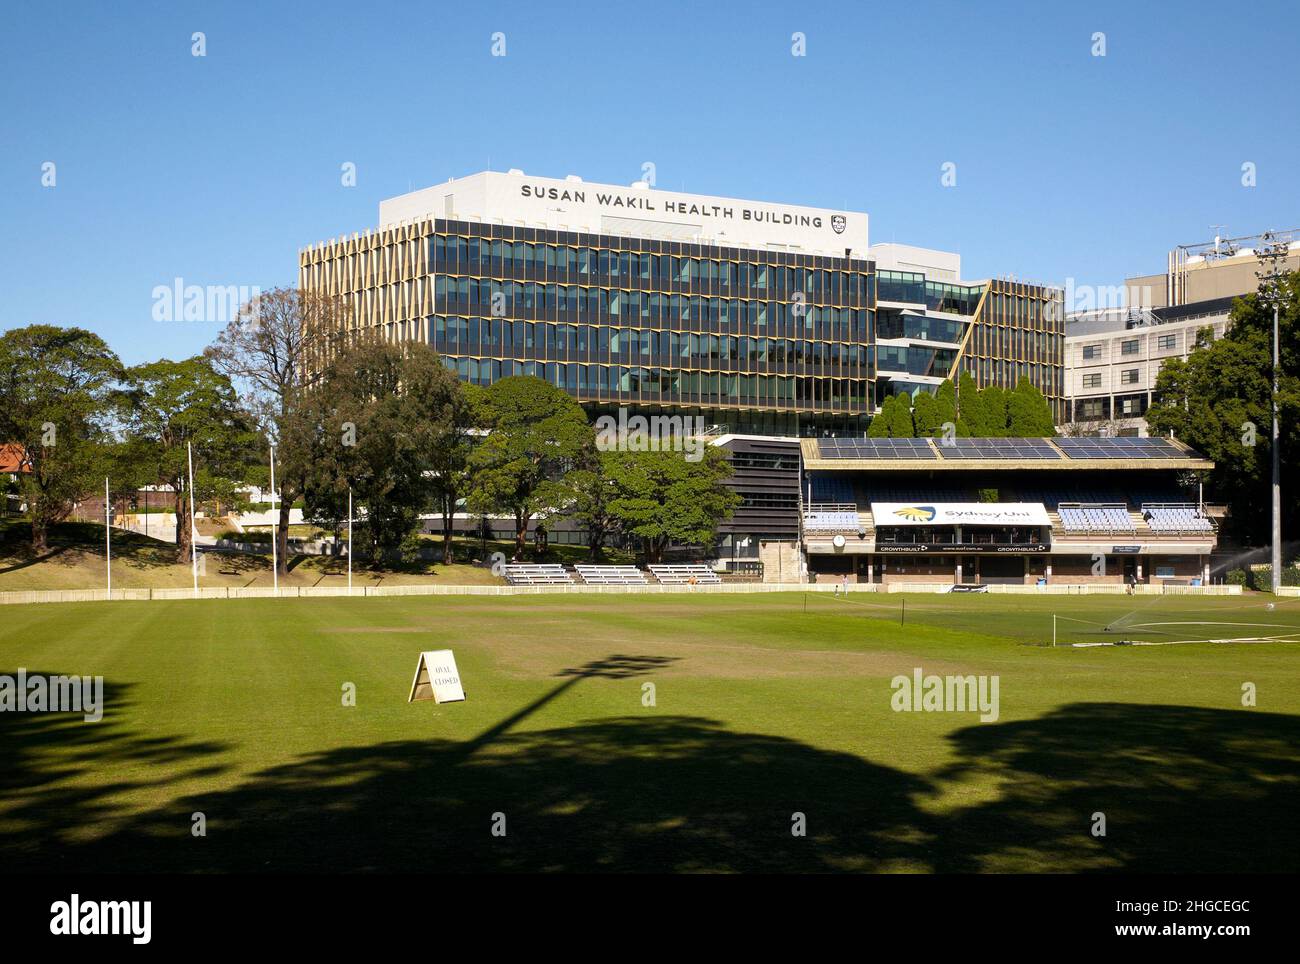 Farbaufnahme eines Feldes und des Susan Wakil Health Building, Western Avenue, University of Sydney, Camperdown, New South Wales, Australien, 2021. Stockfoto